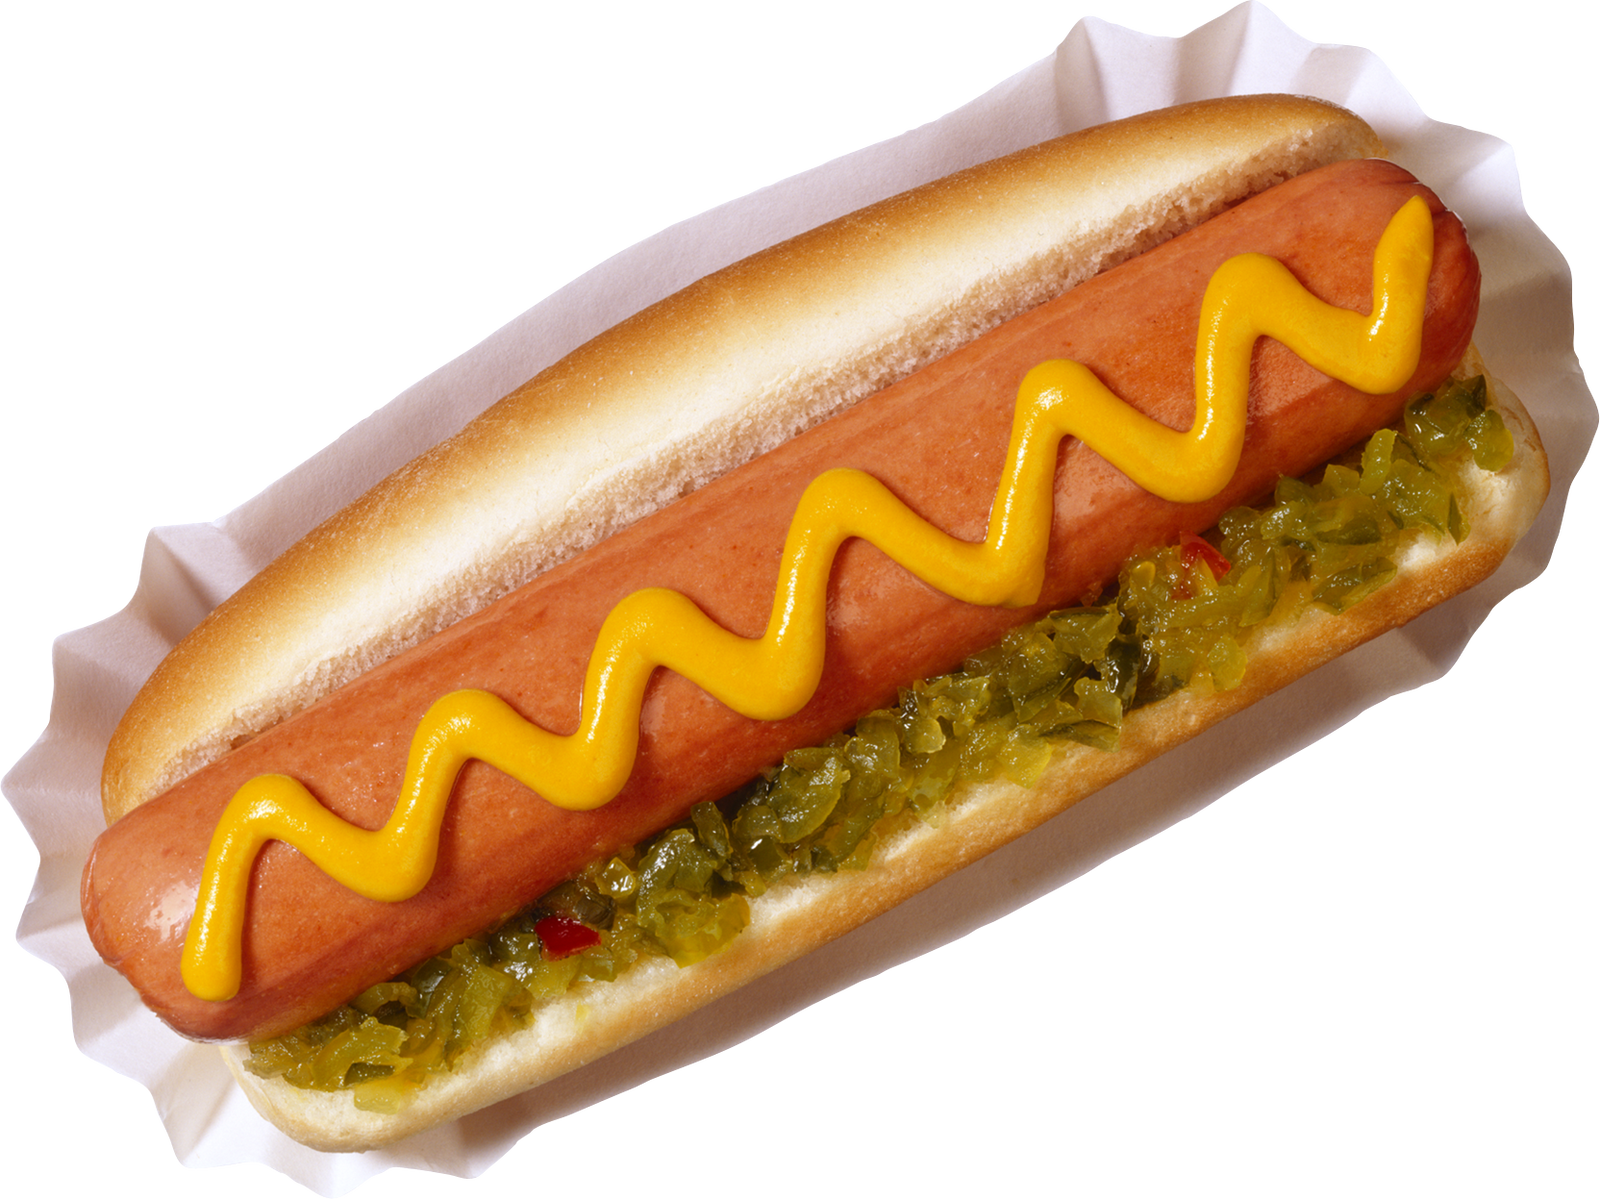 Png Images - Hotdog - Hot Dog Image Transparent Background (1600x1199), Png Download